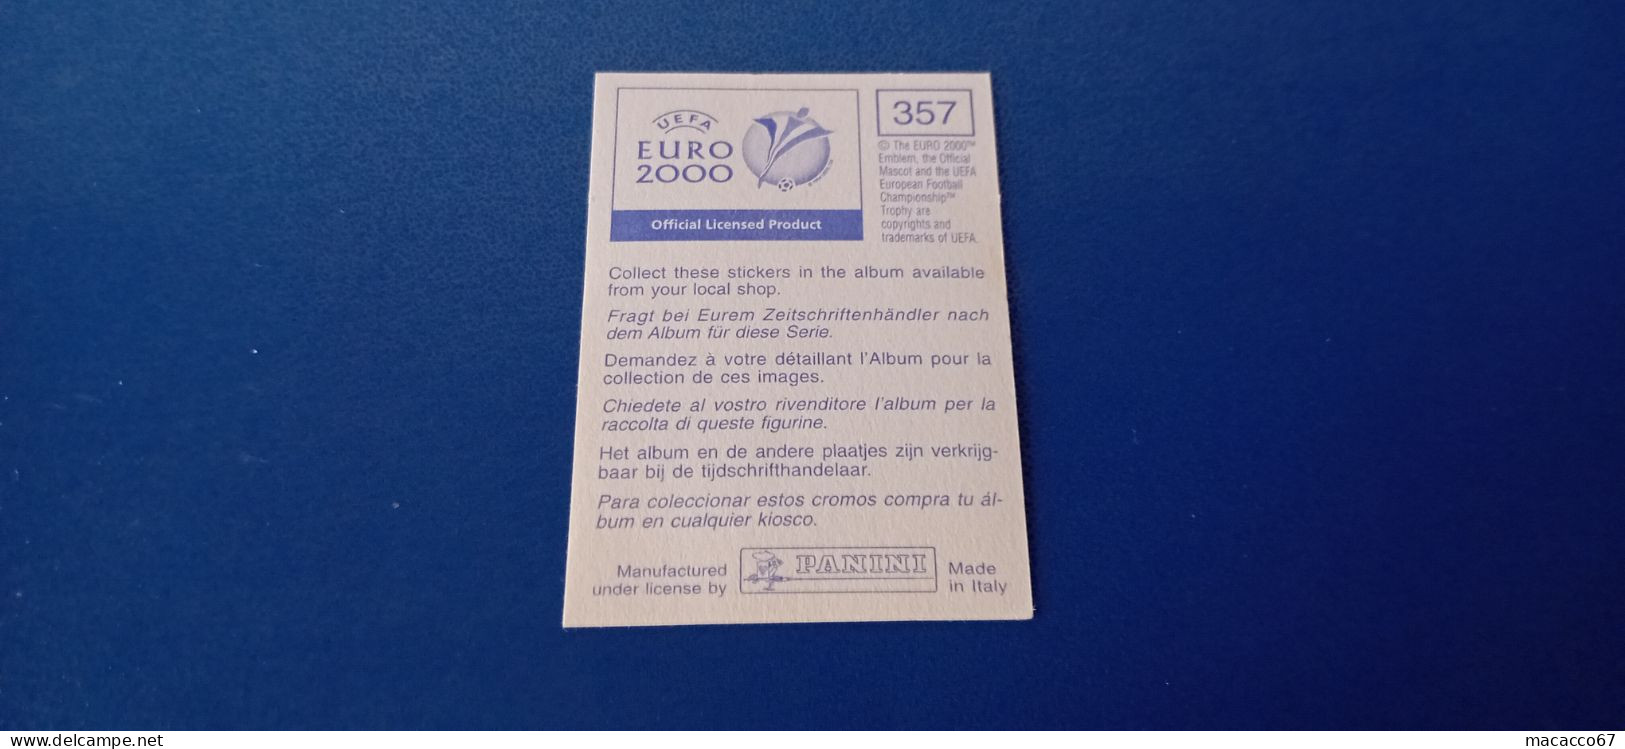 Figurina Panini Euro 2000 - 357 Vairelles Francia - Edition Italienne